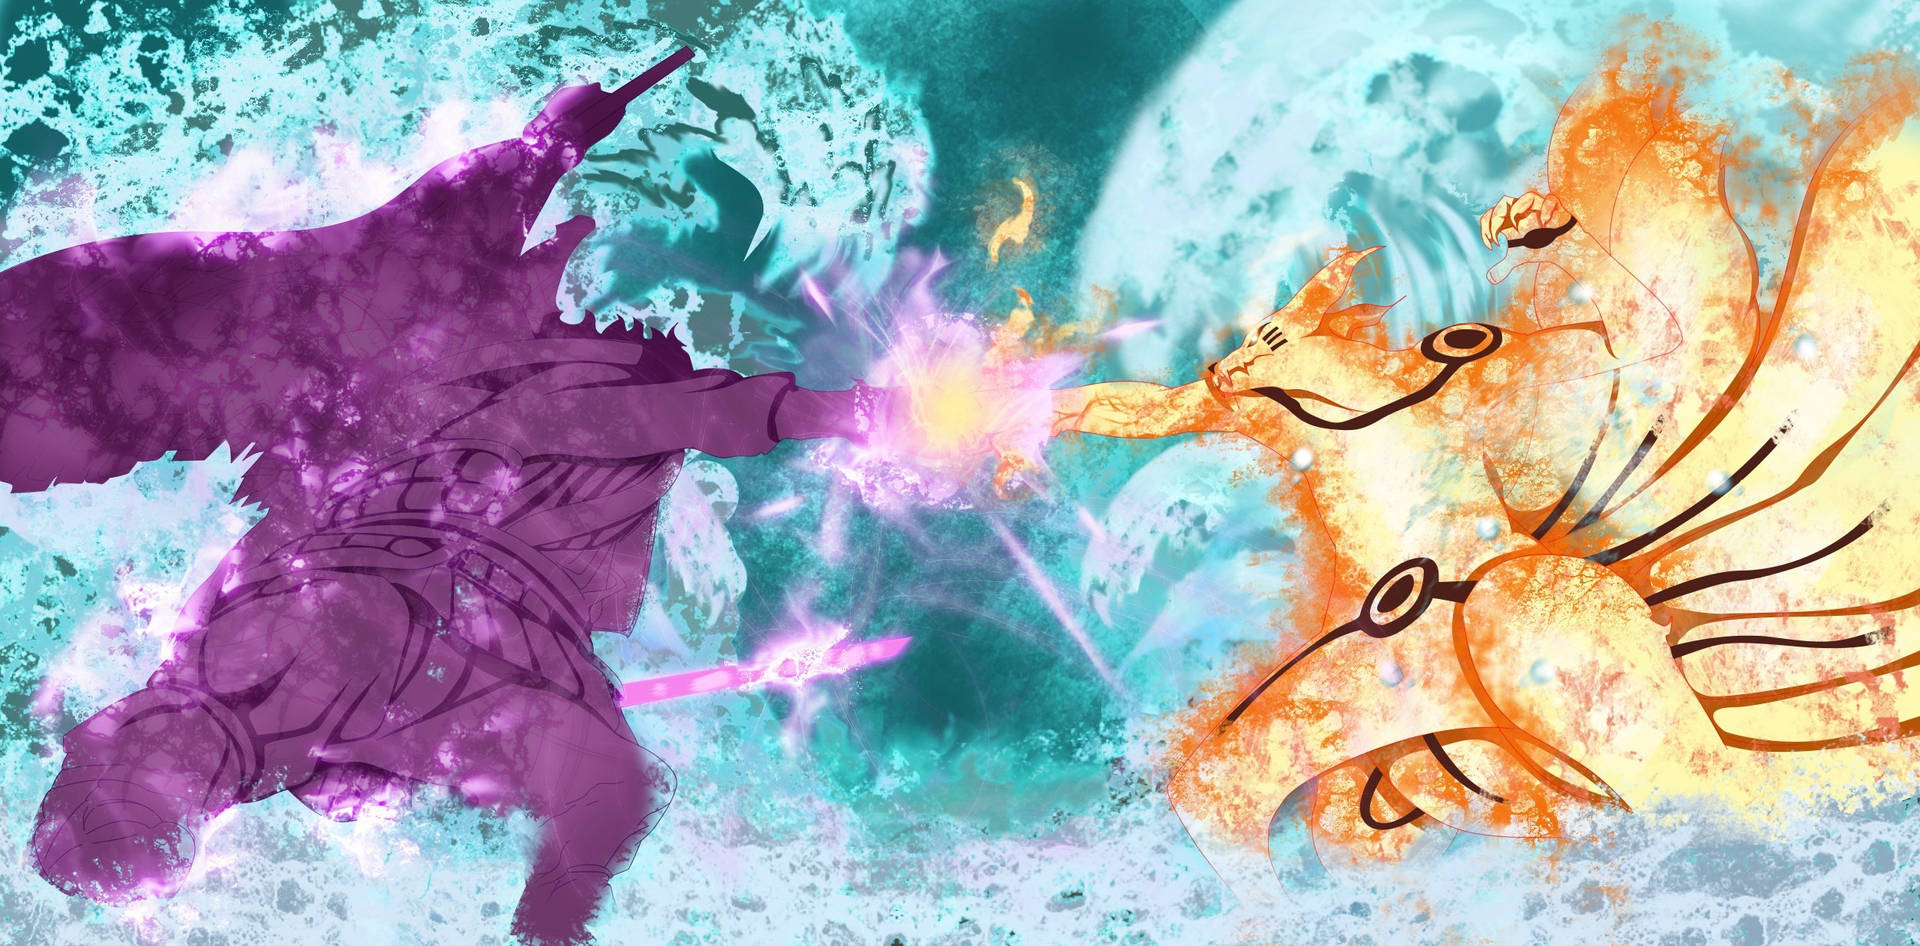 Naruto Vs Sasuke In Final Forms